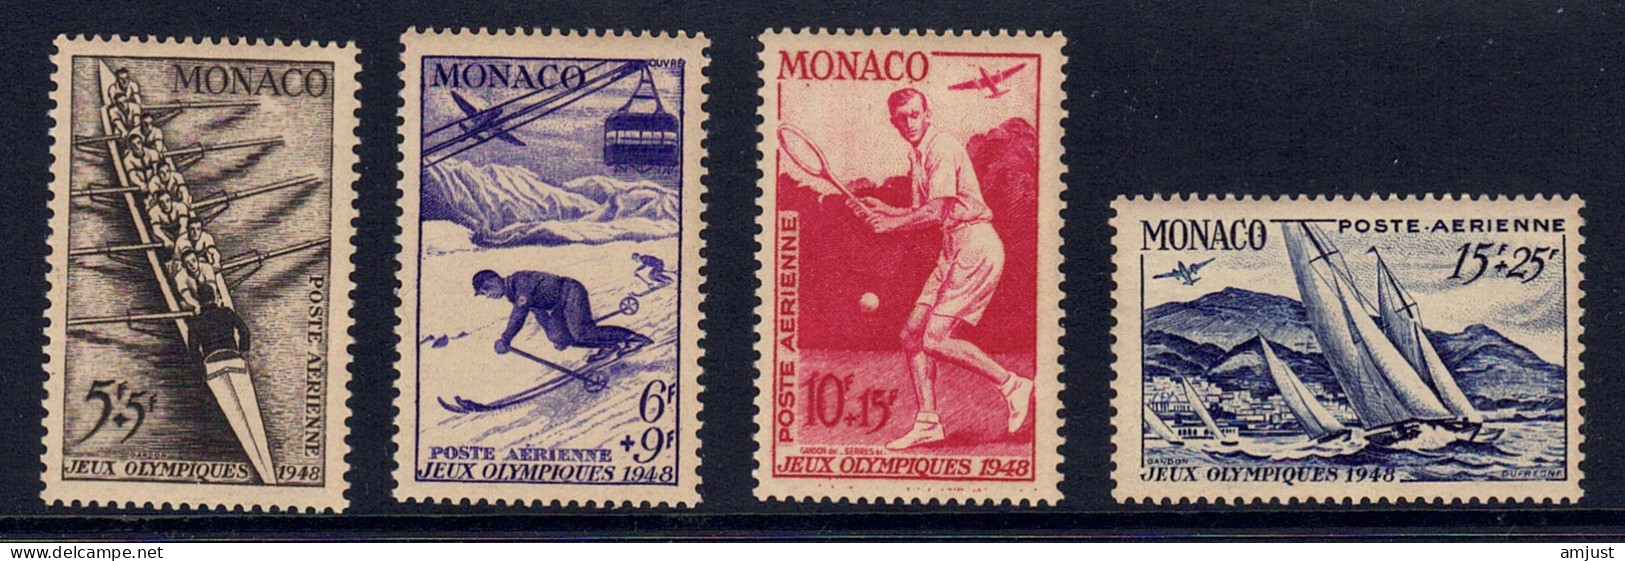 Monaco // Poste Aérienne1948  // Jeux Olympiques De Londres  Timbres Neufs** MNH  No. Y&T 32 à 35 - Airmail